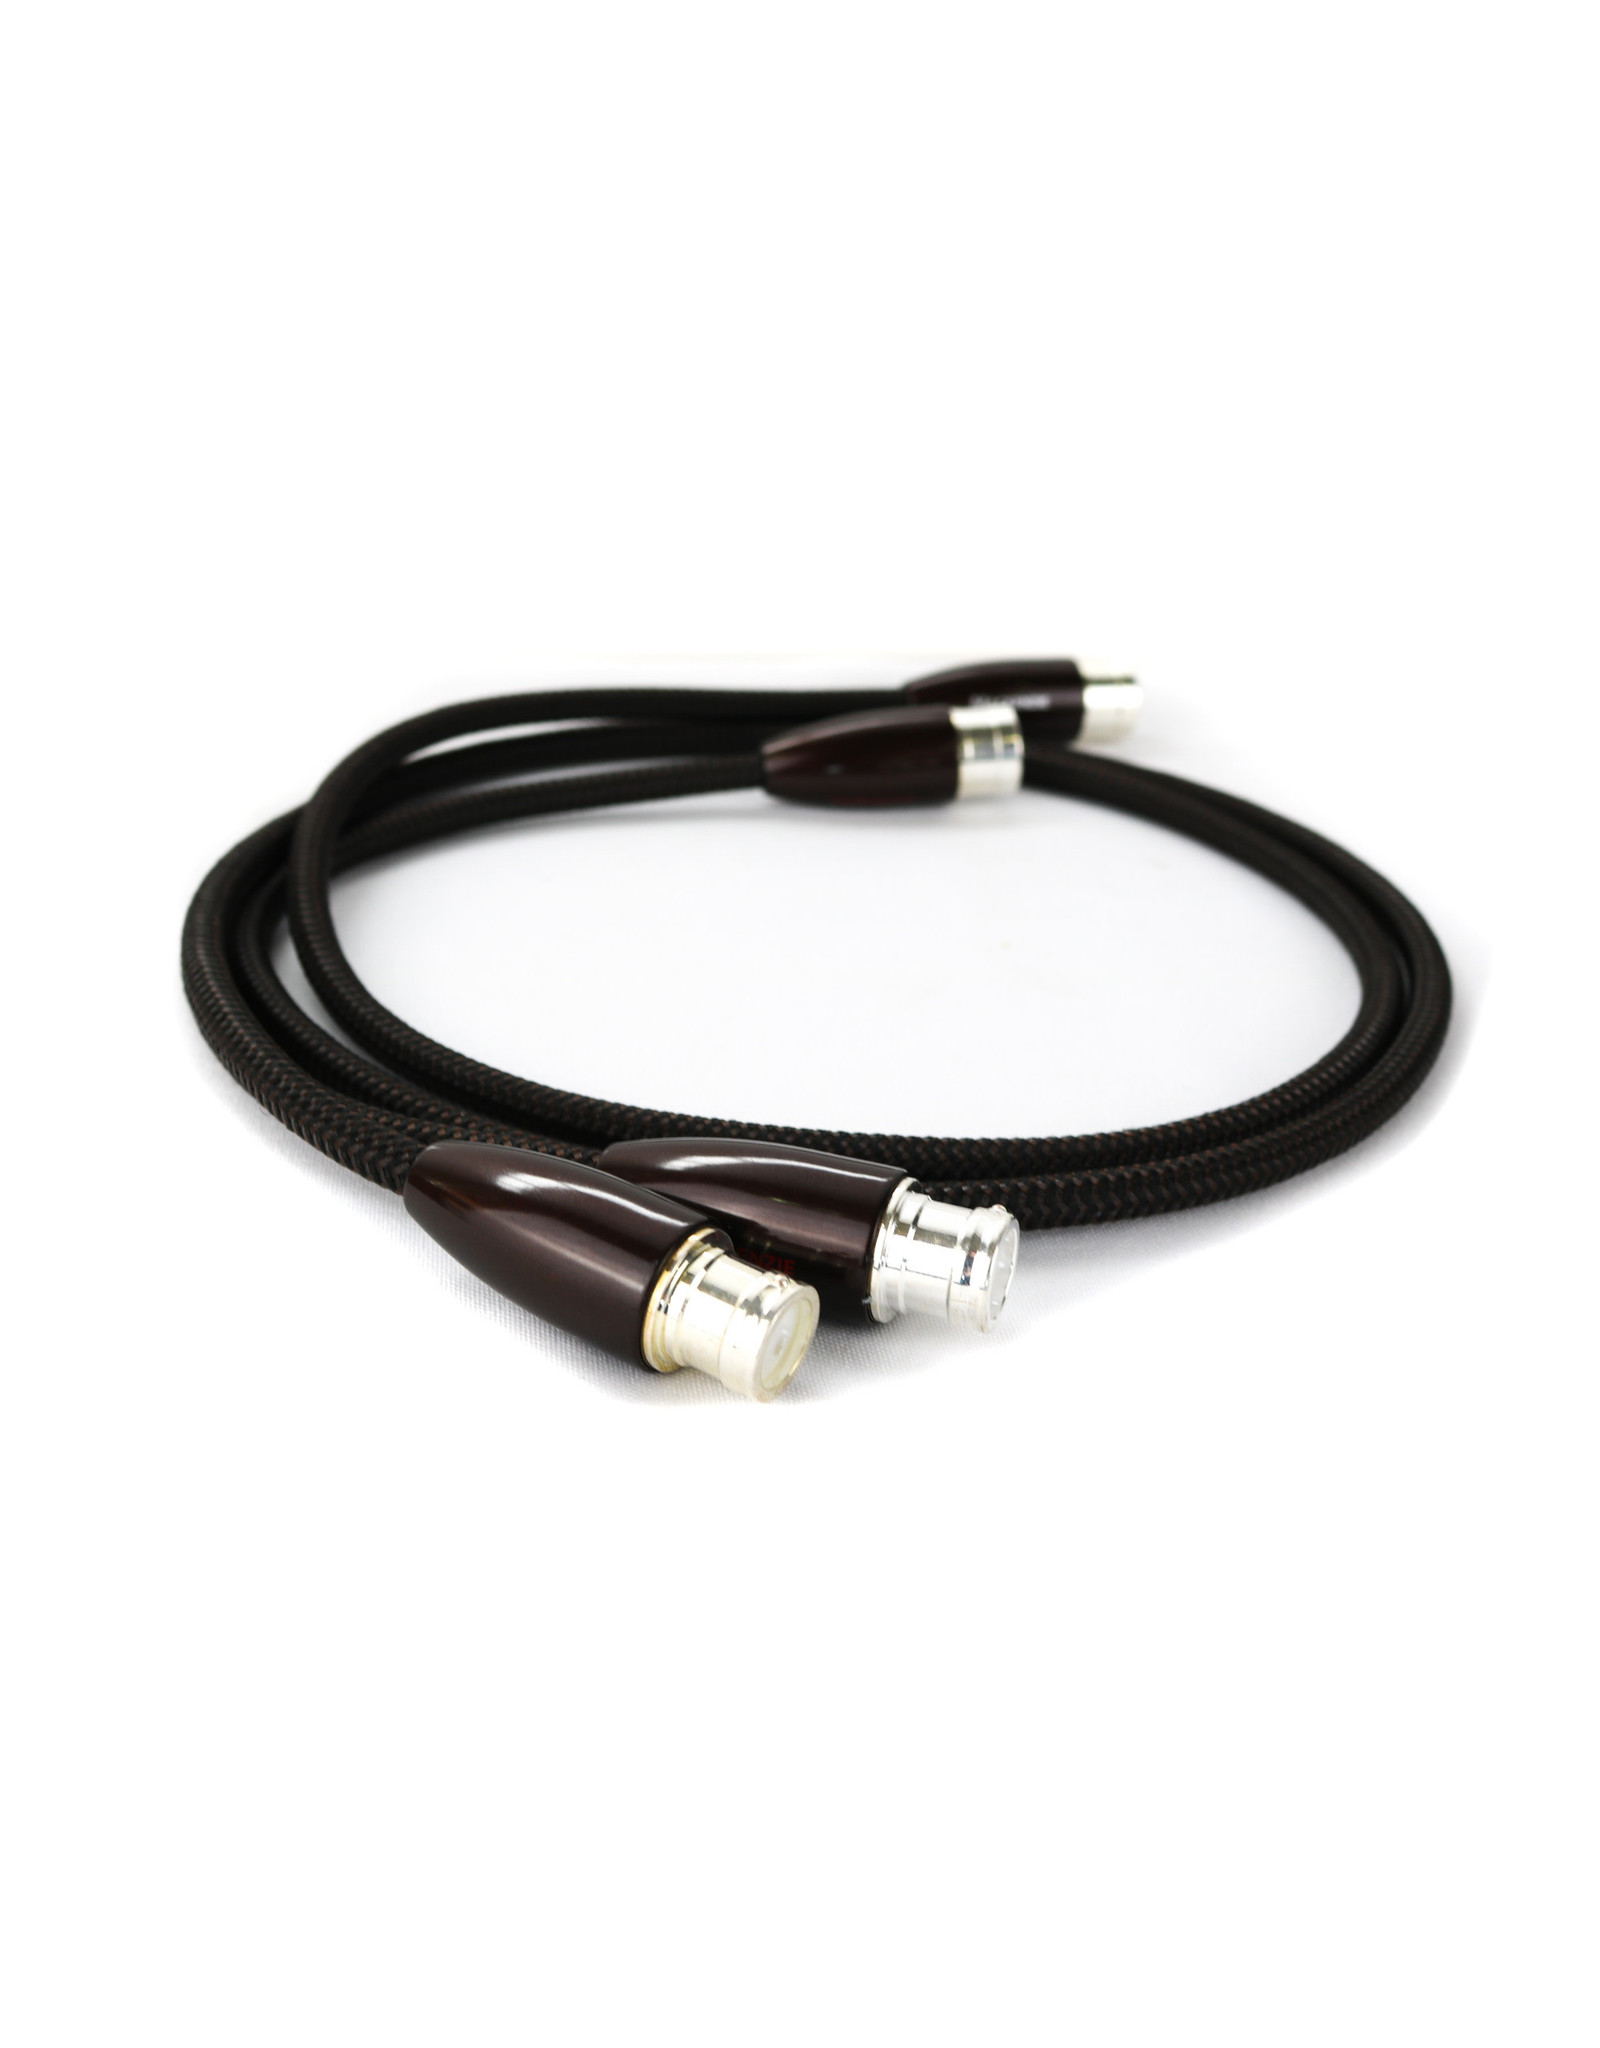 AudioQuest AudioQuest Mackenzie XLR Cable 1m Pair USED